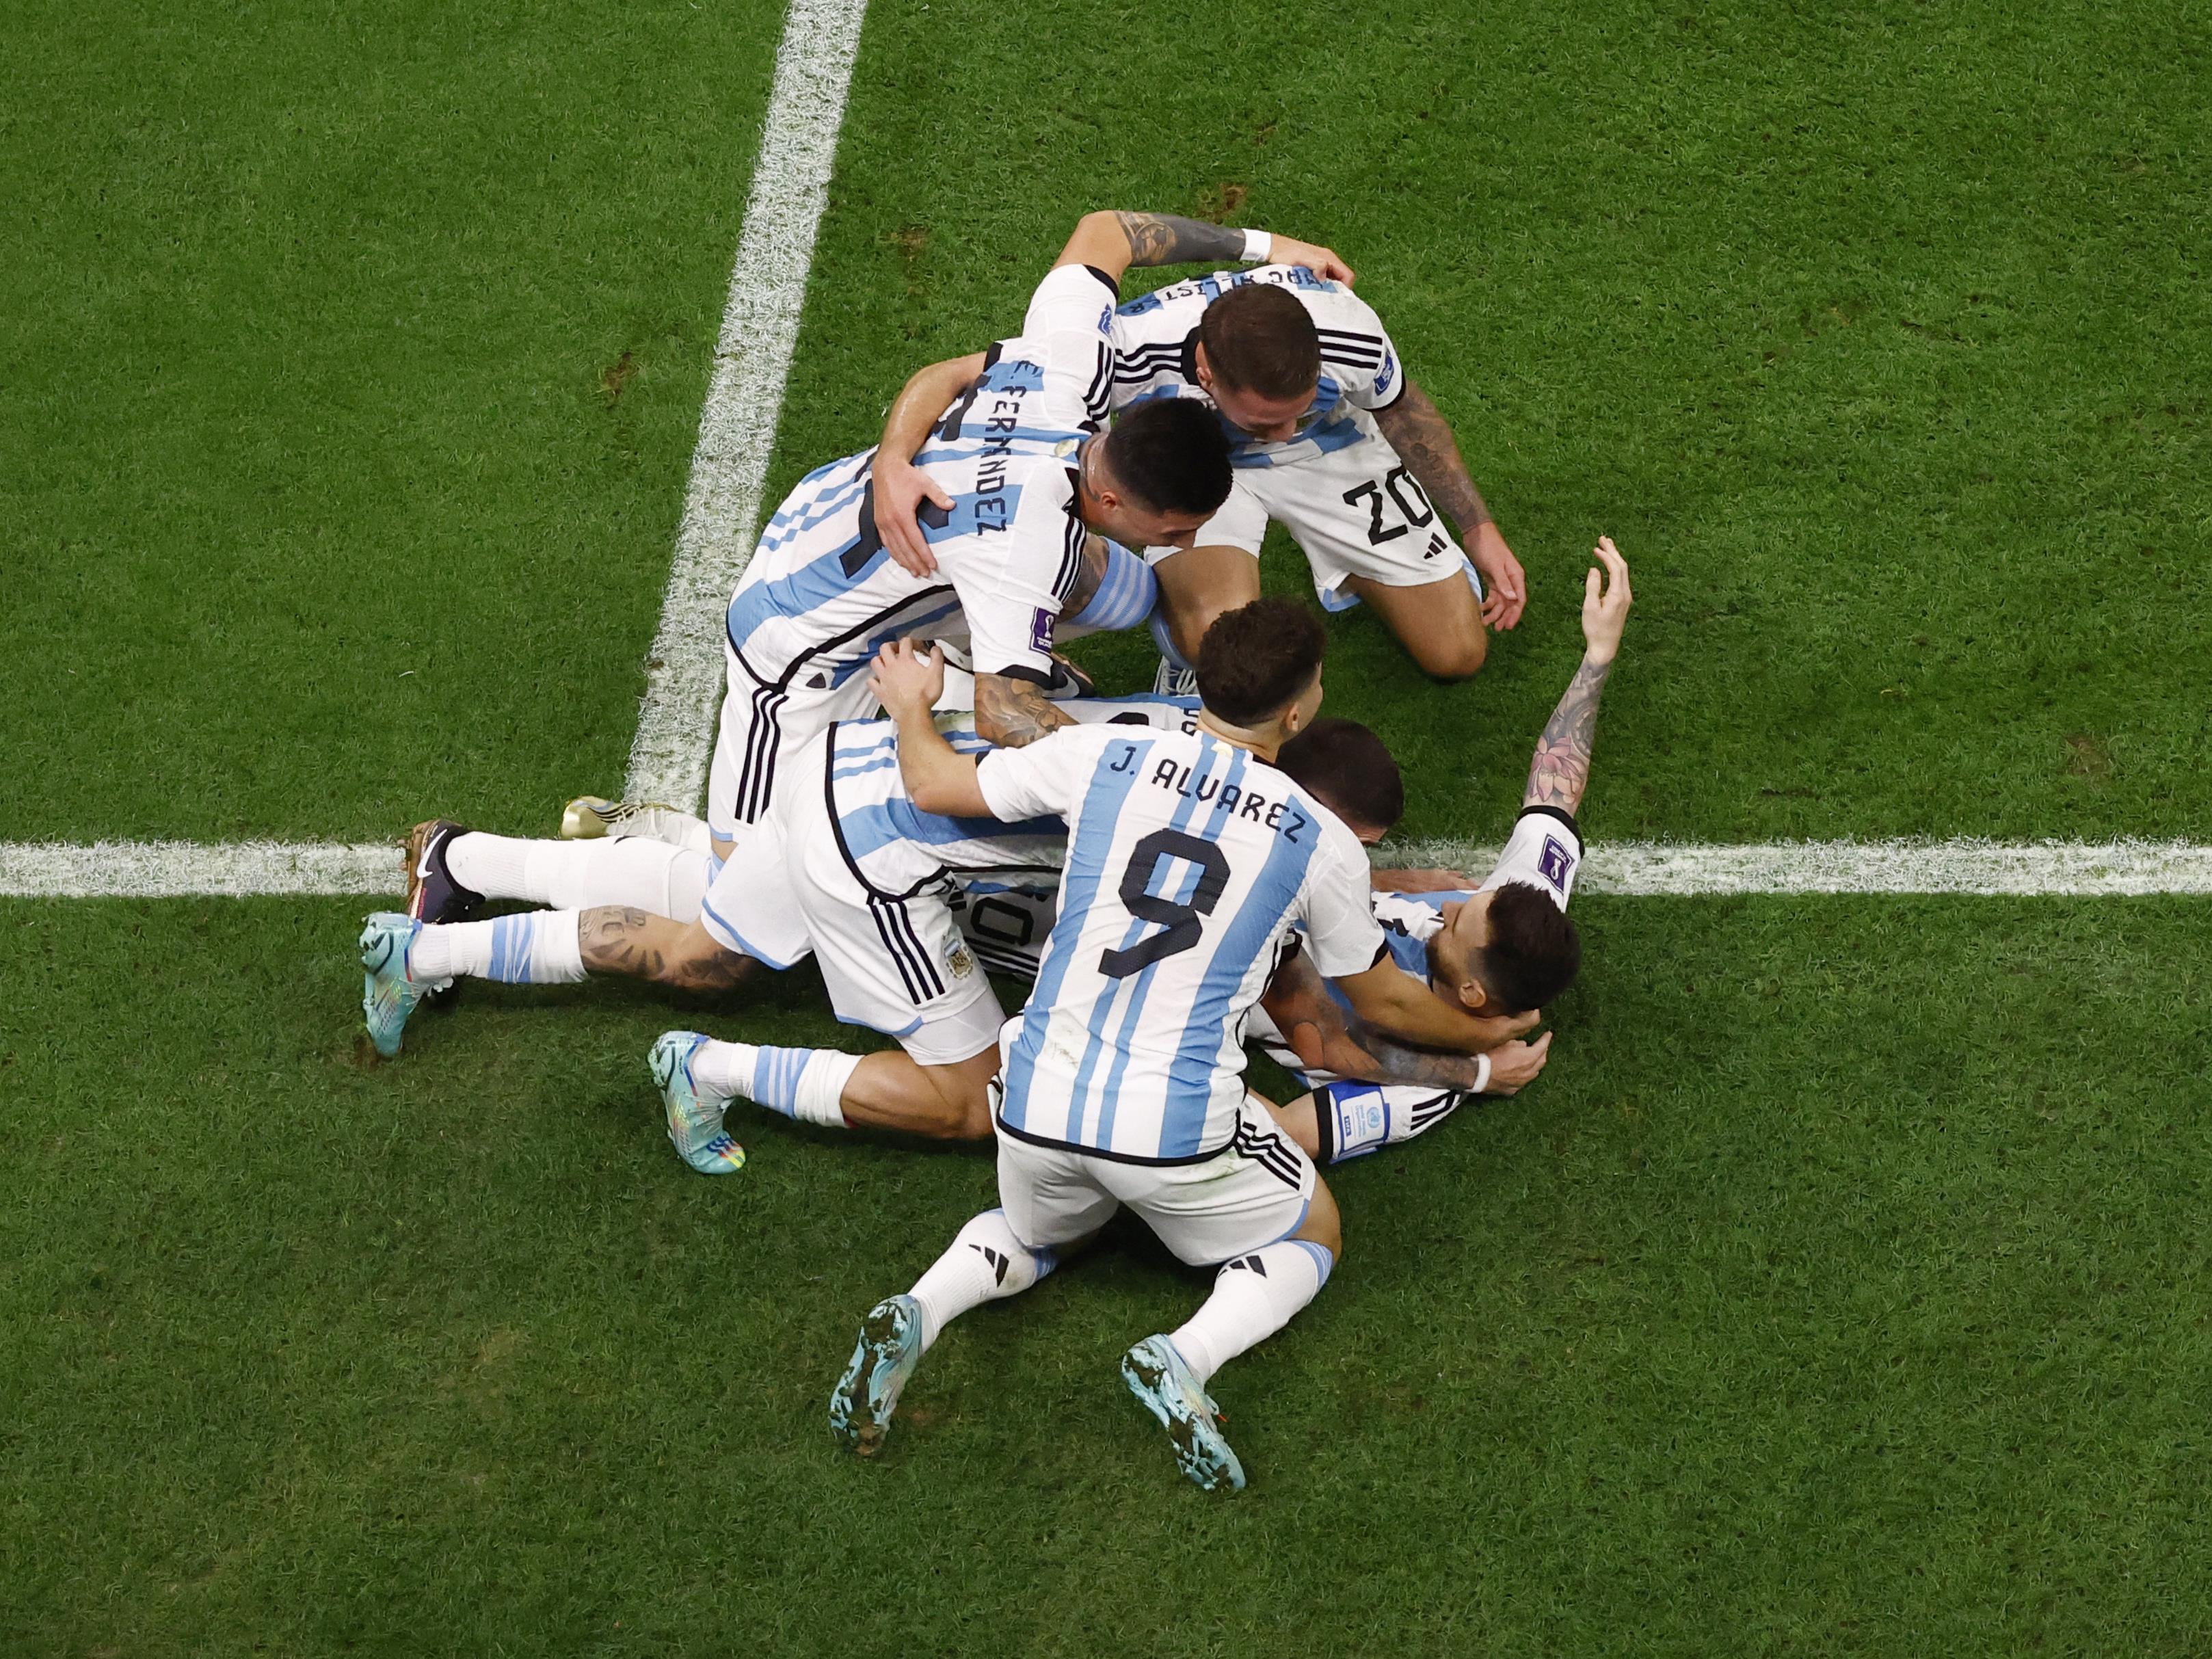 Direct Coupe du monde 2022. L'Argentine bat la France aux tirs au but et  remporte la Coupe du monde